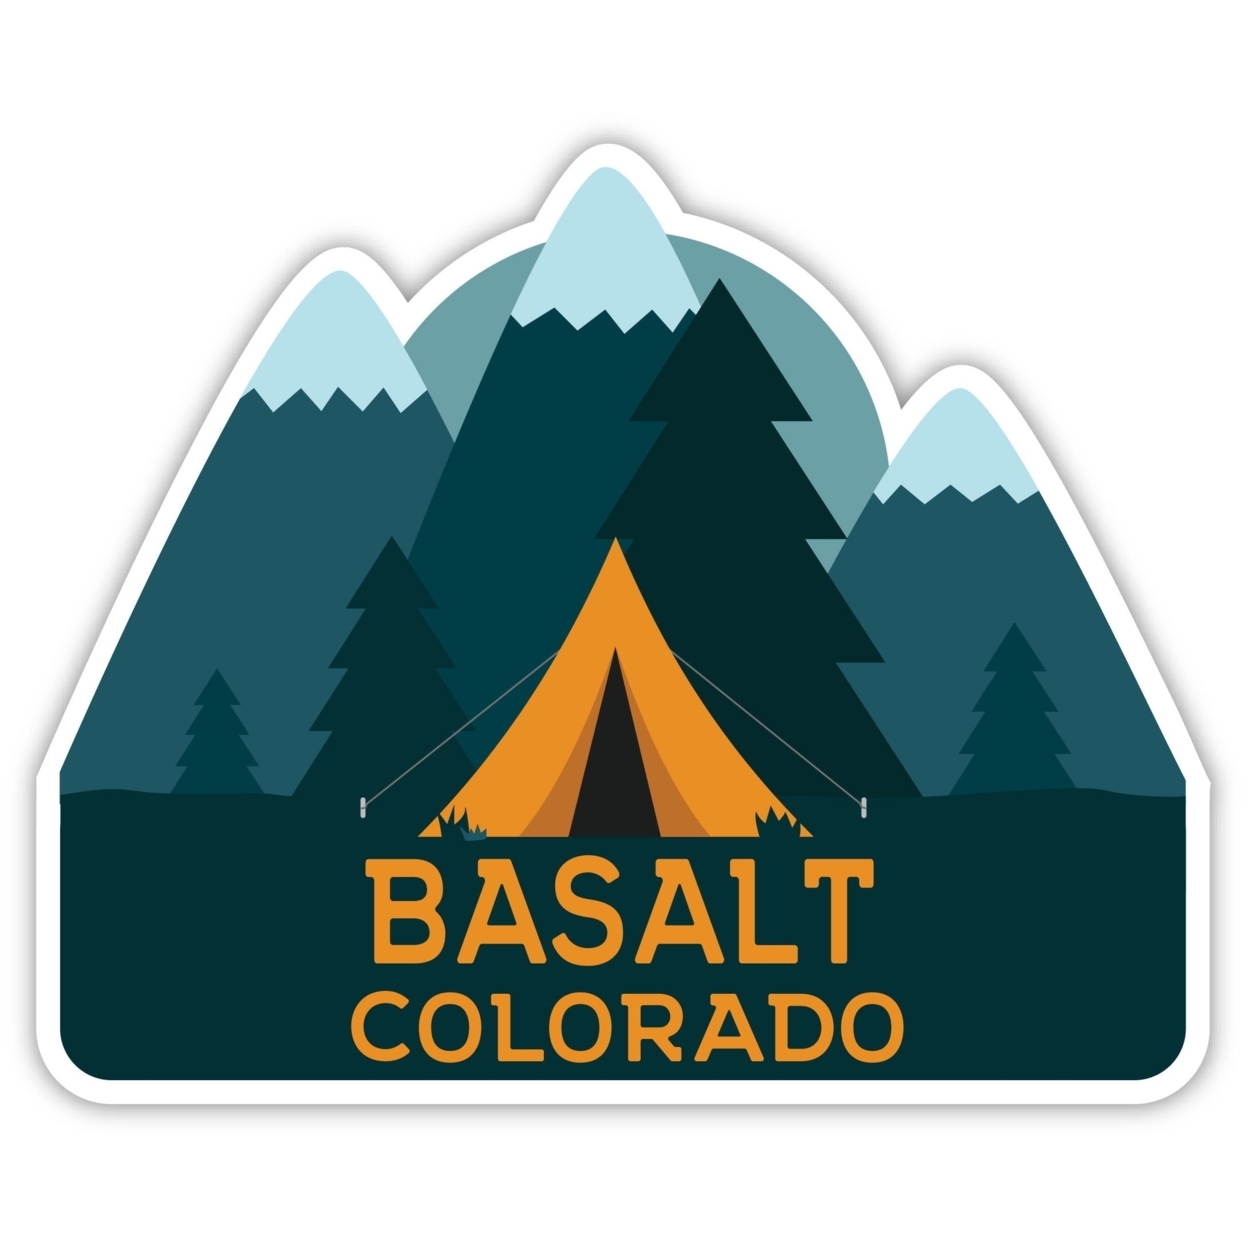 Basalt Colorado Souvenir Decorative Stickers (Choose Theme And Size) - Single Unit, 4-Inch, Tent